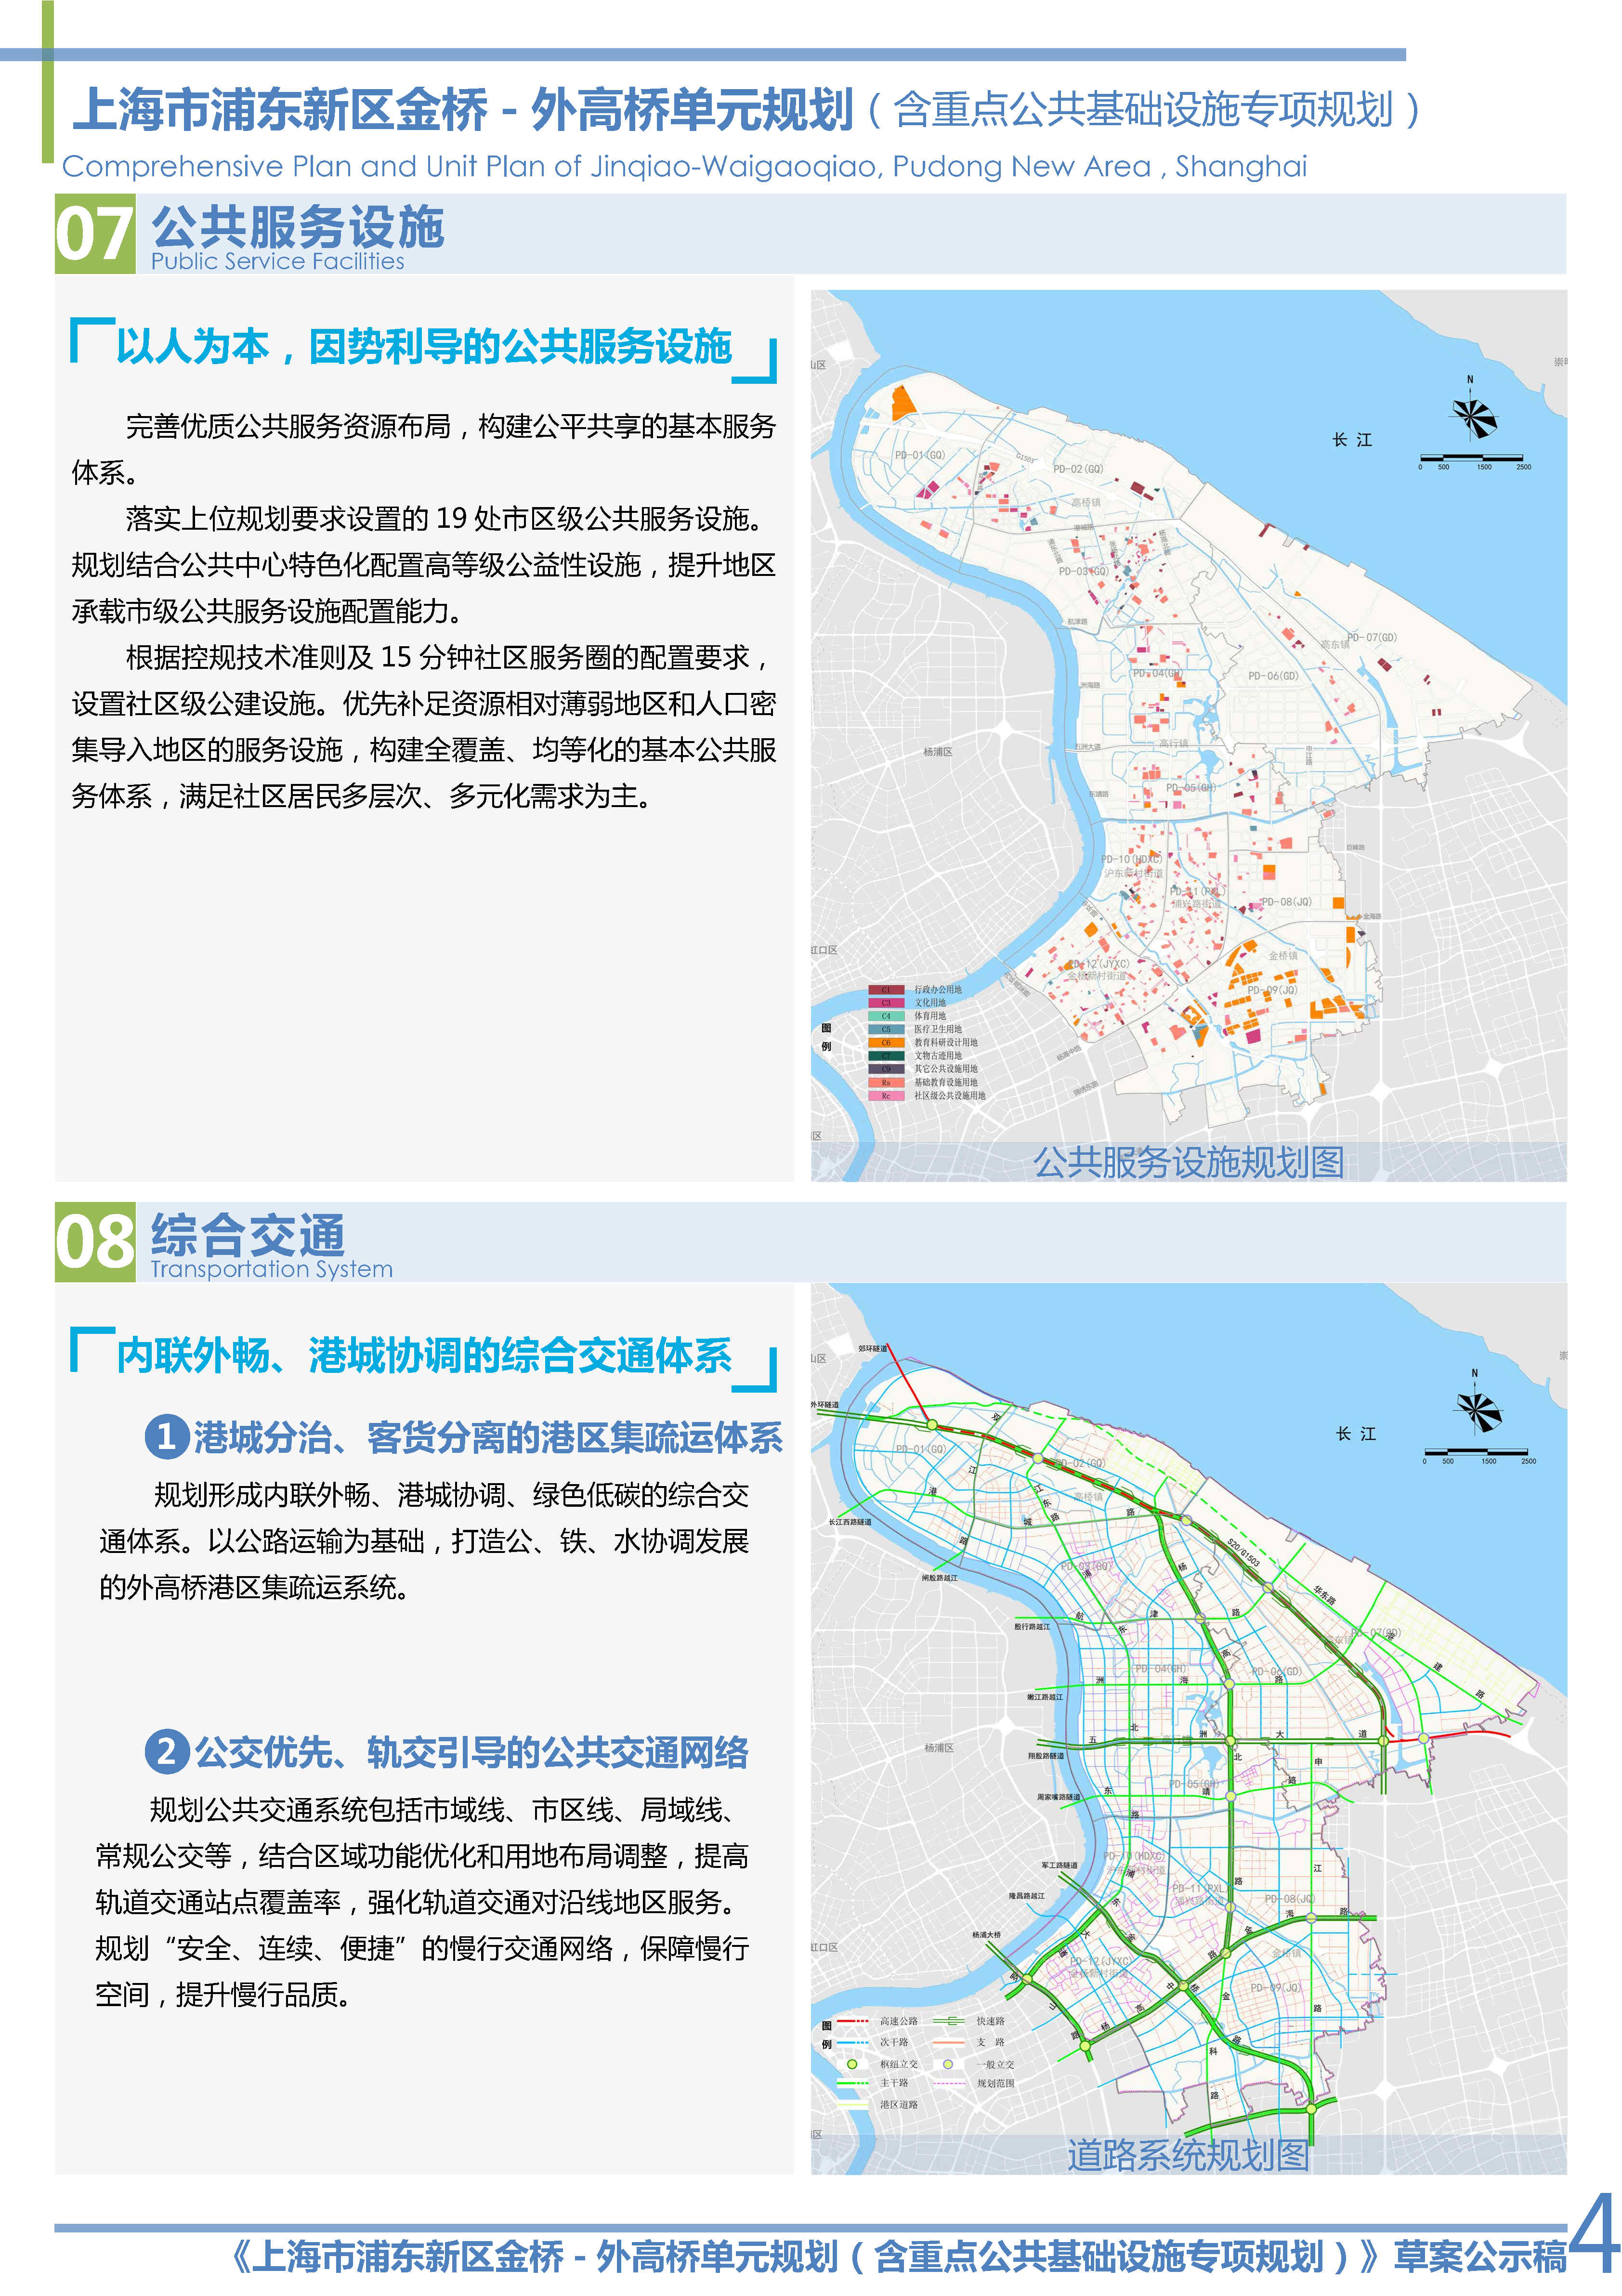 01-草案公示稿：上海市浦东新区金桥-外高桥单元规划_Page4.jpg